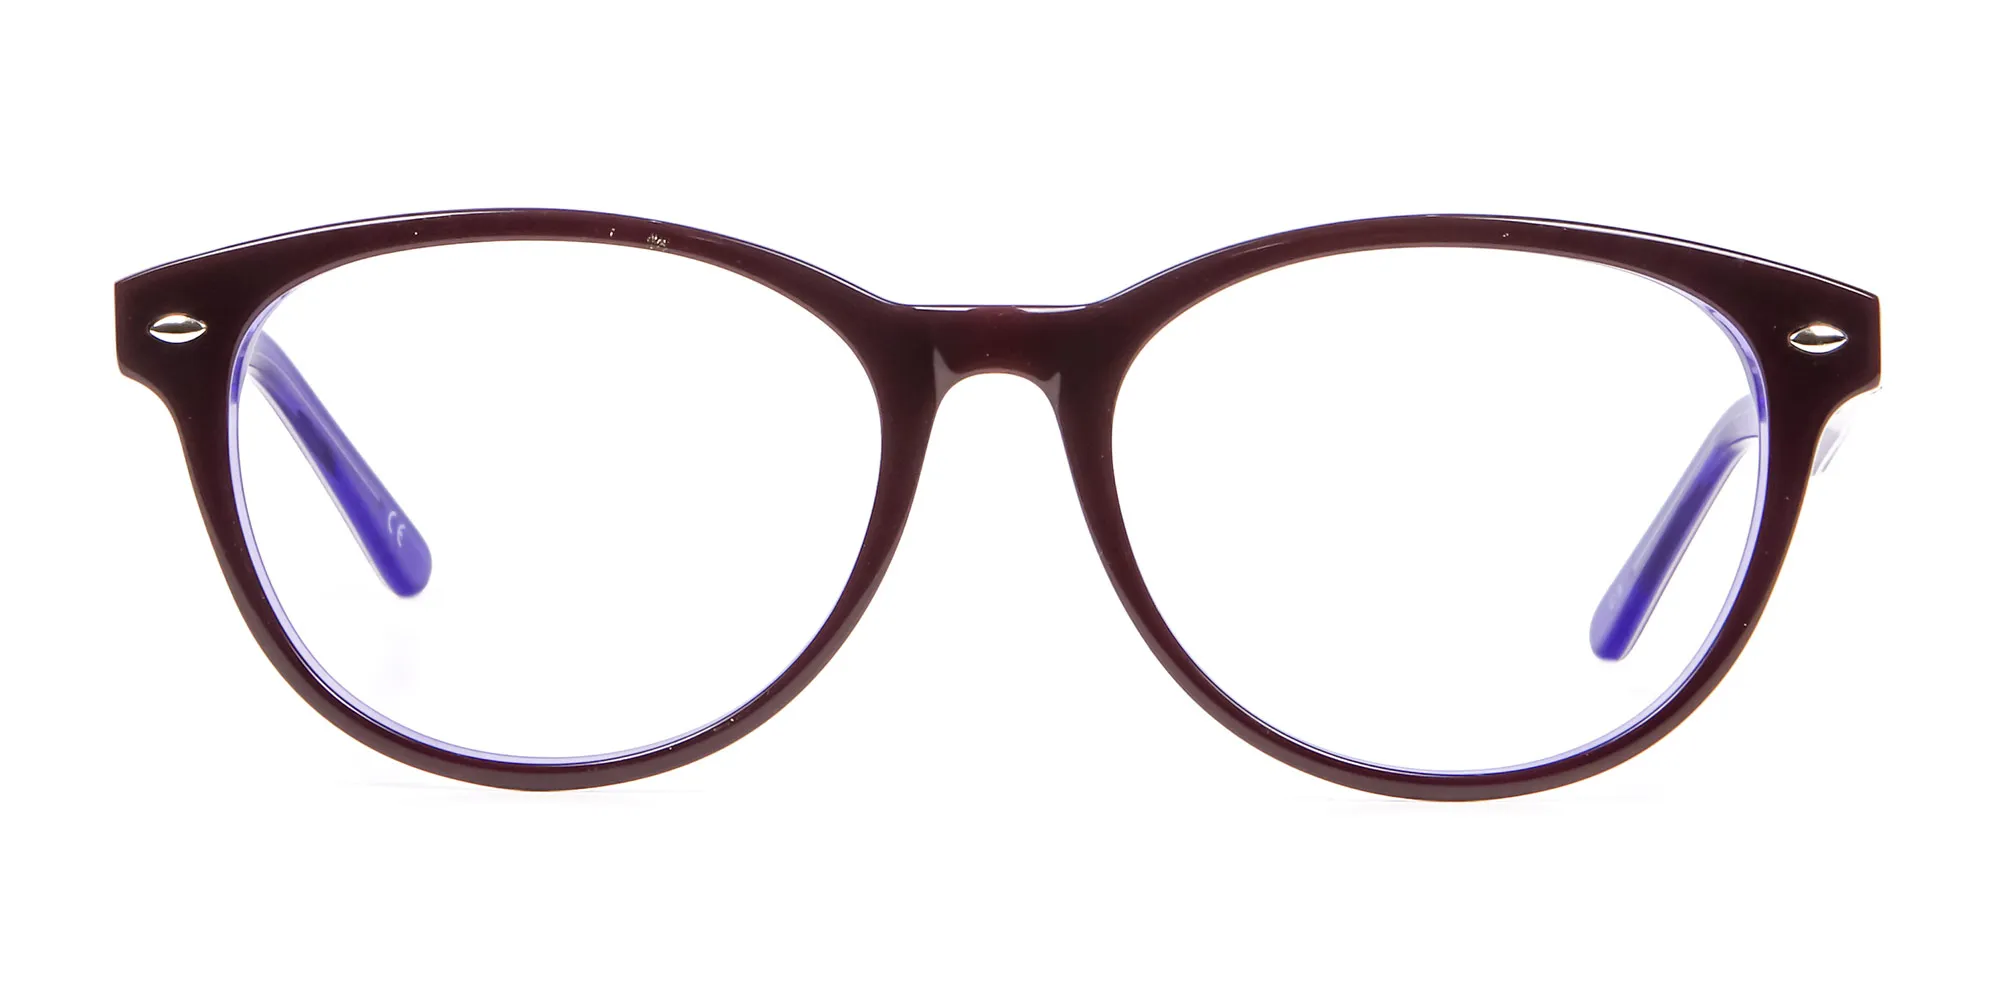 Black & Violet Eyeglasses Frame - 1